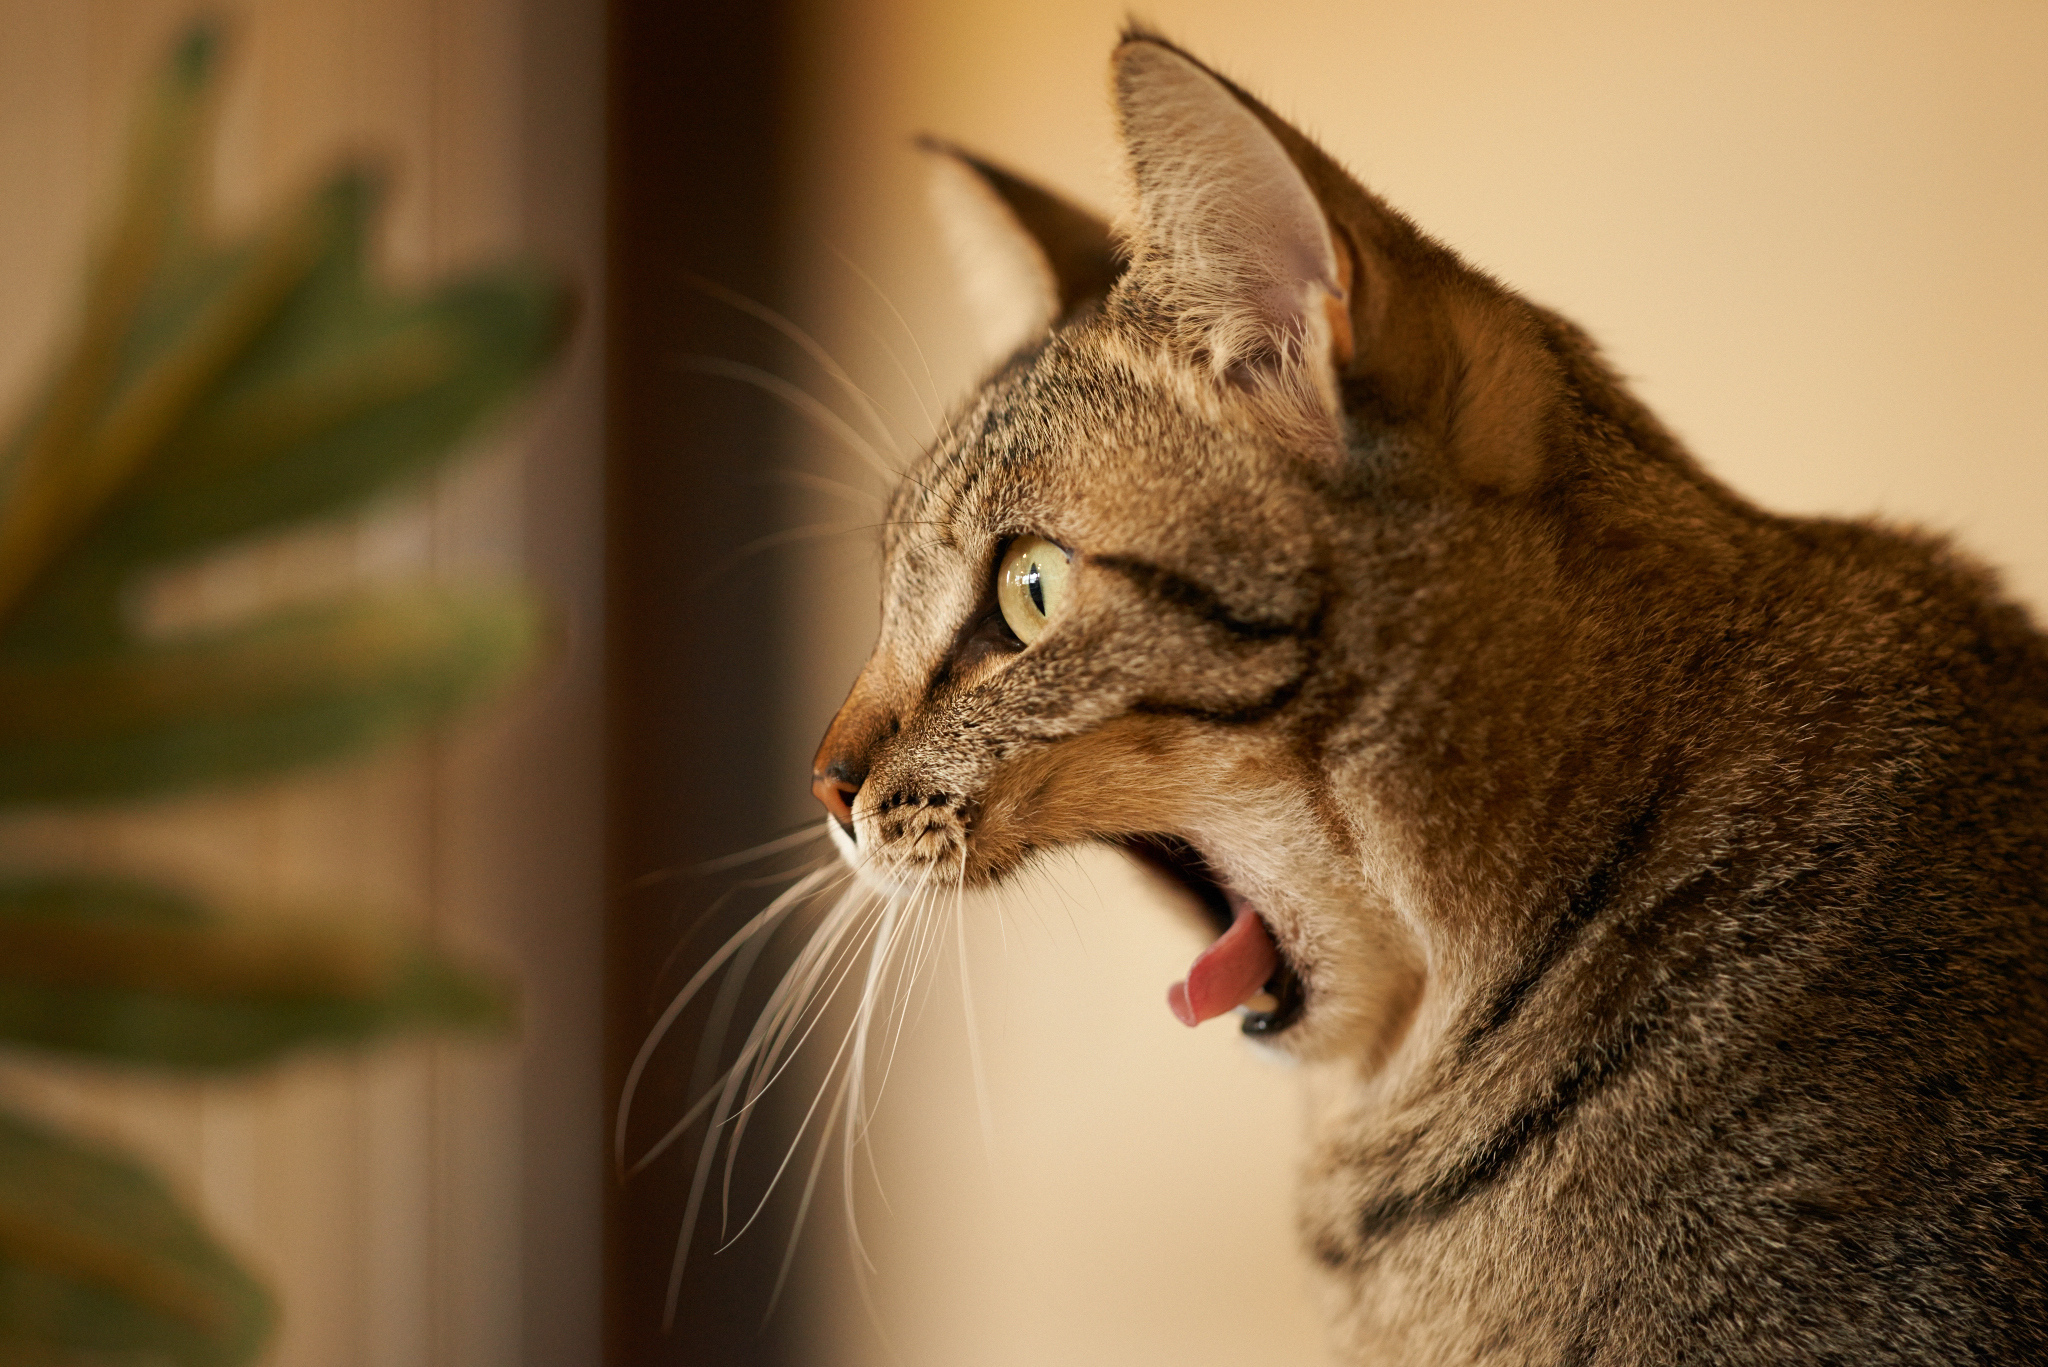 Scared cat. Морда кота сбоку. Кот зевает сбоку. Кошка в профиль. Красивая морда кошки.